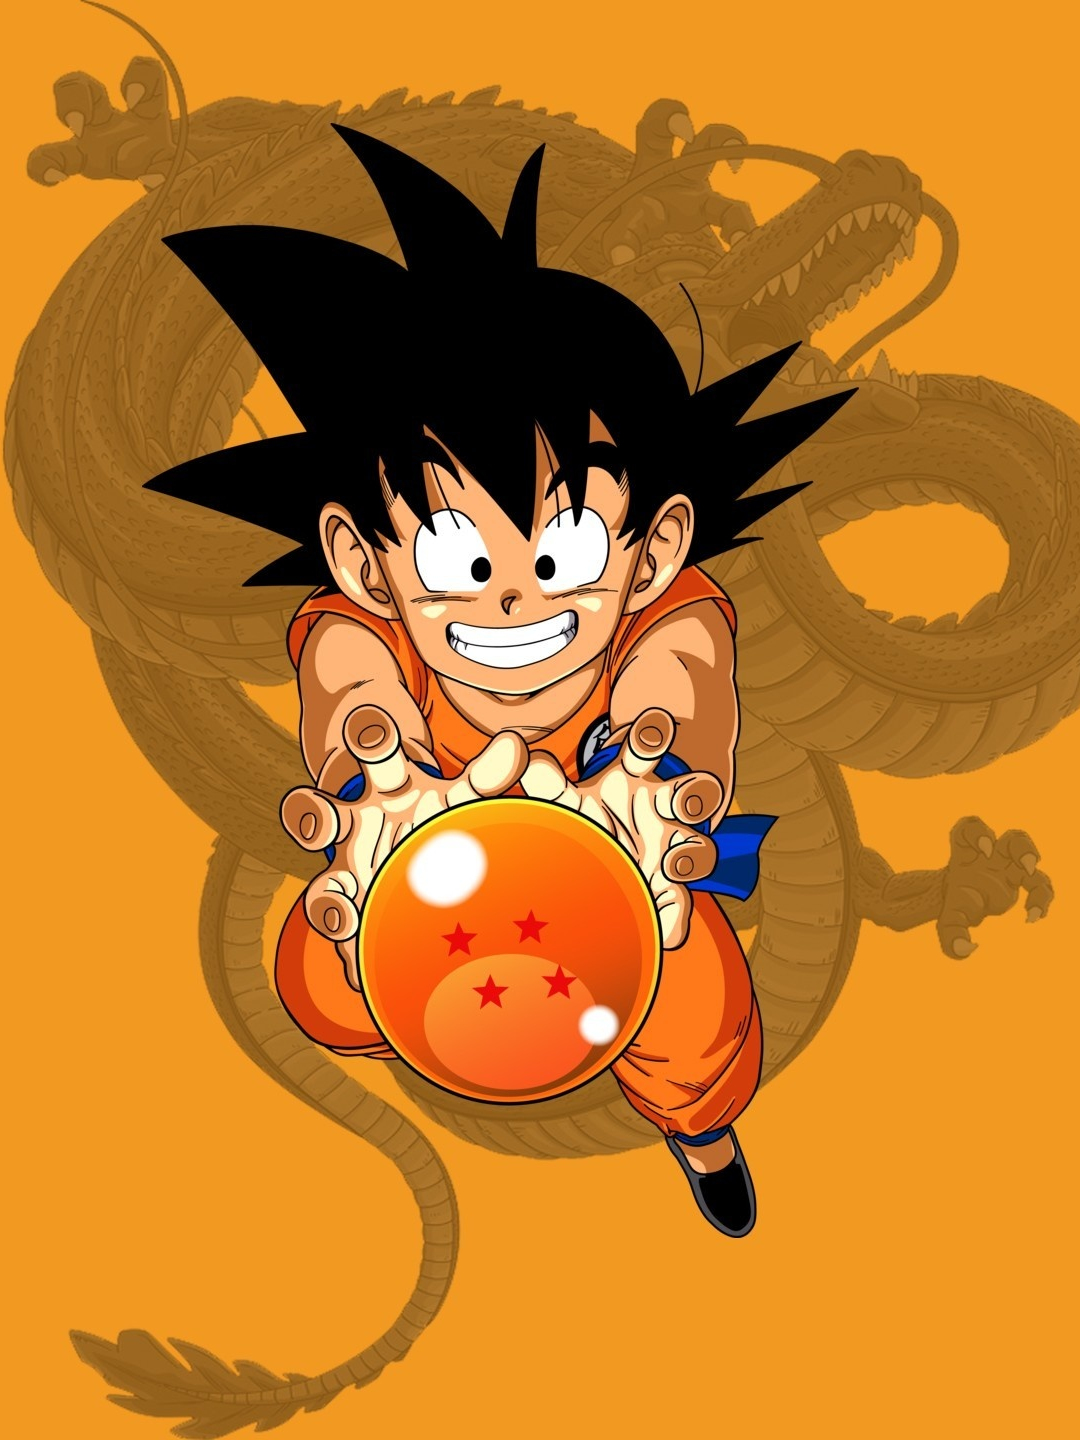 LOFI Dragon Ball Z wallpaper by Natesumrow - Download on ZEDGE™